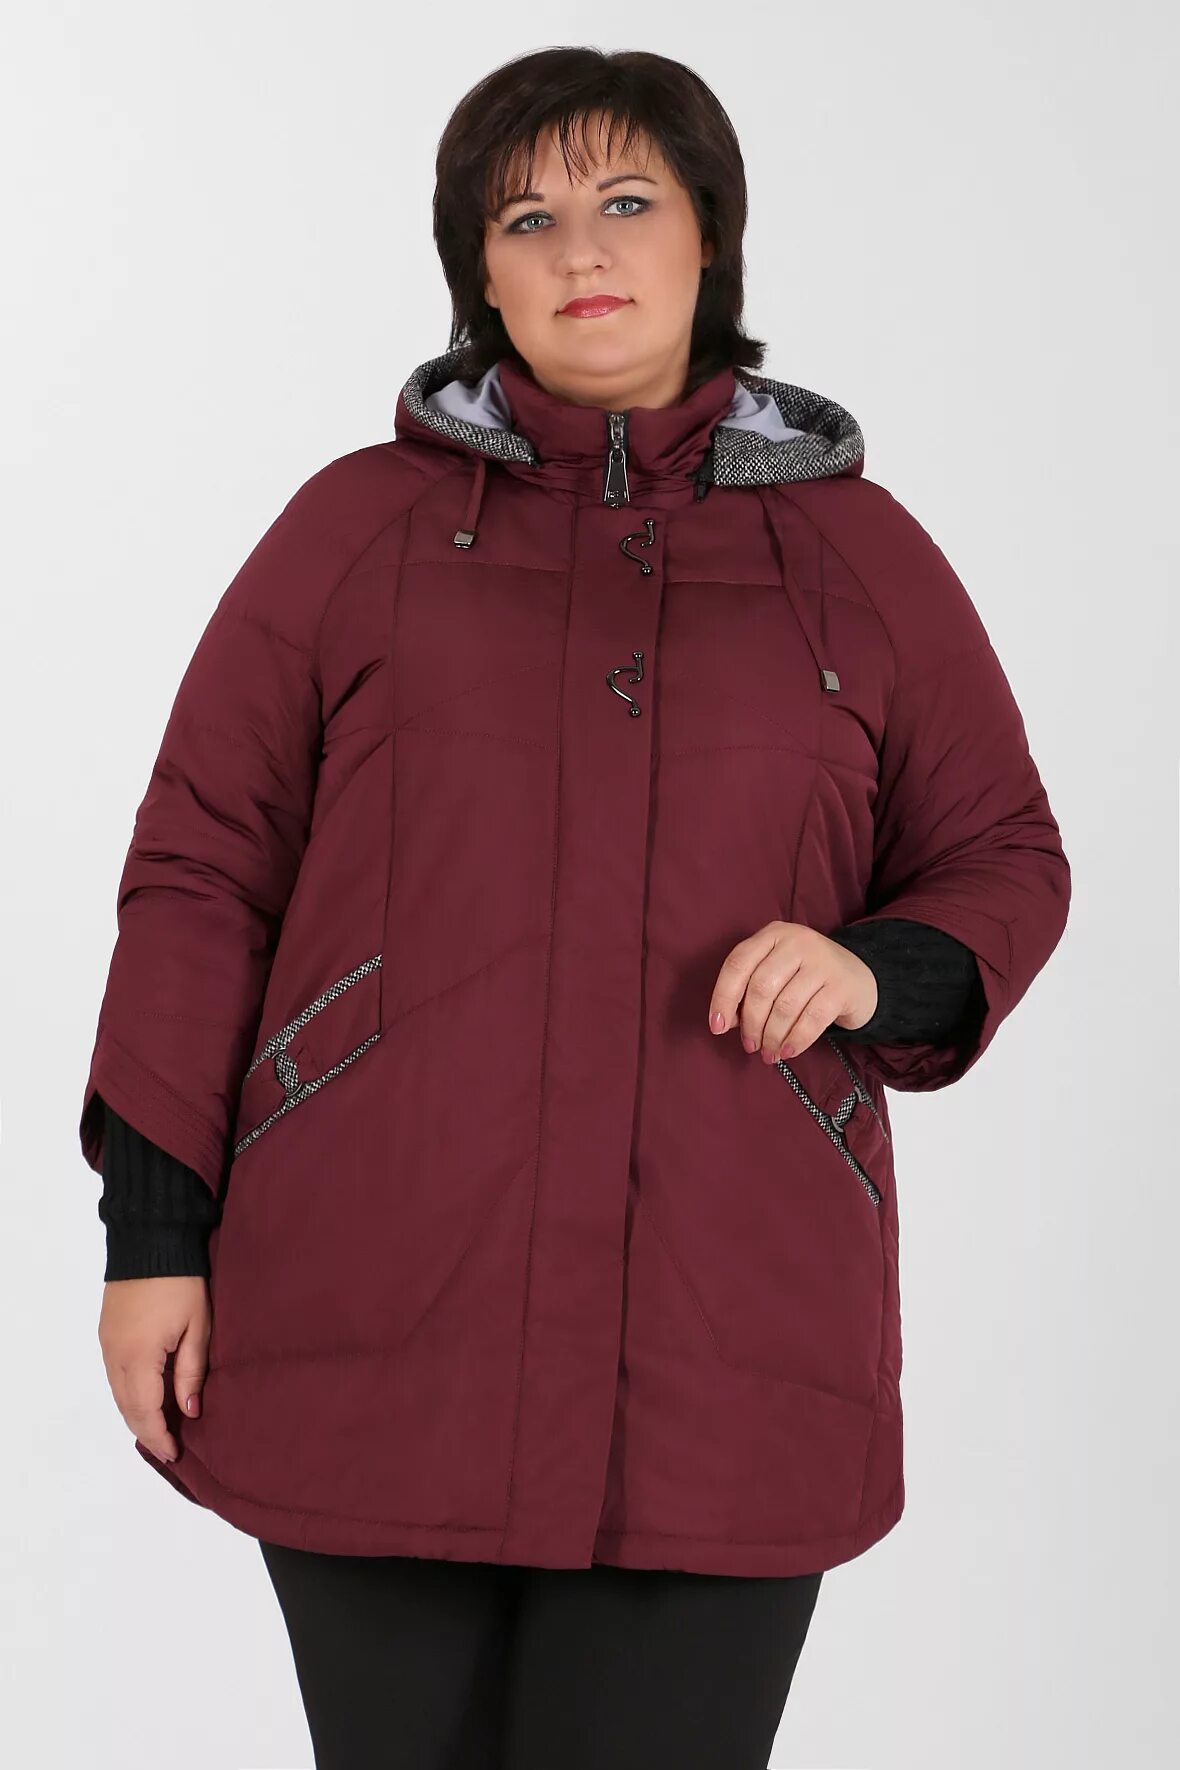 Куртки больших размеров недорого. Mishel утепленная куртка 56 размер. Mishel утепленная куртка 60 размер. Зимняя куртка женская валберис 62 размер. Куртки Вико больших размеров 72-74 размер.